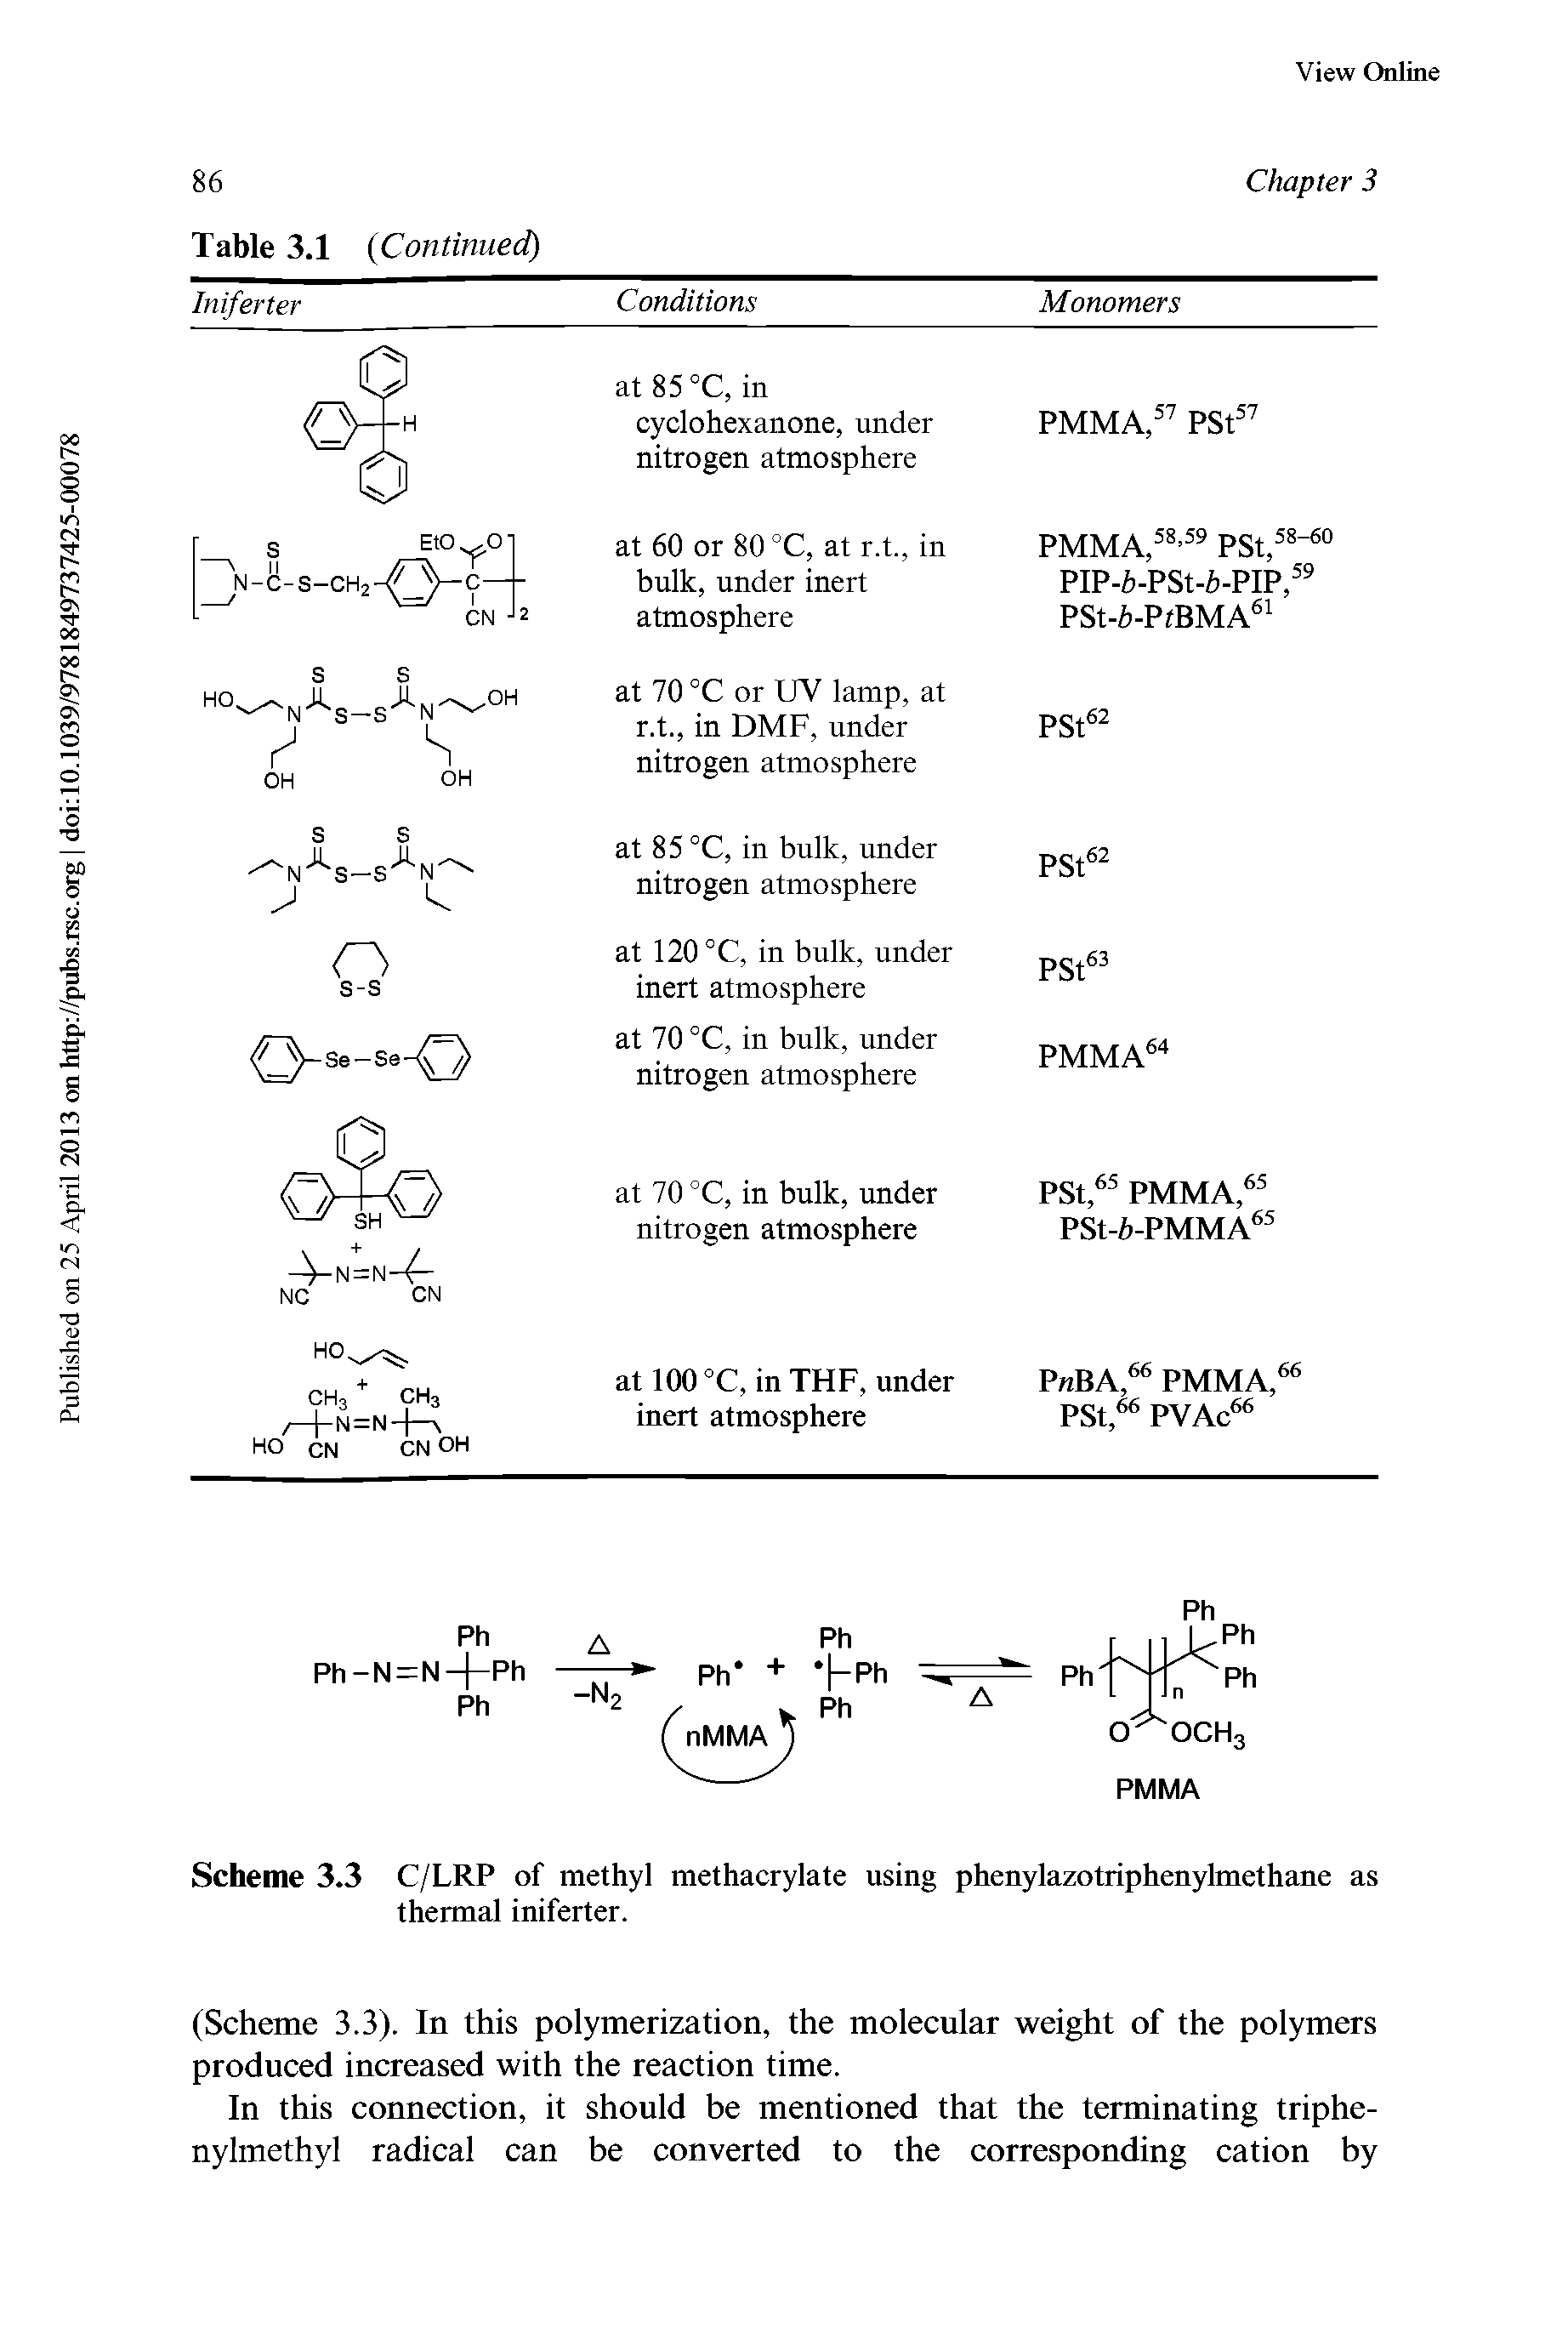 Scheme 3.3 C/LRP of methyl methacrylate using phenylazotriphenyhnethane as thermal iniferter.